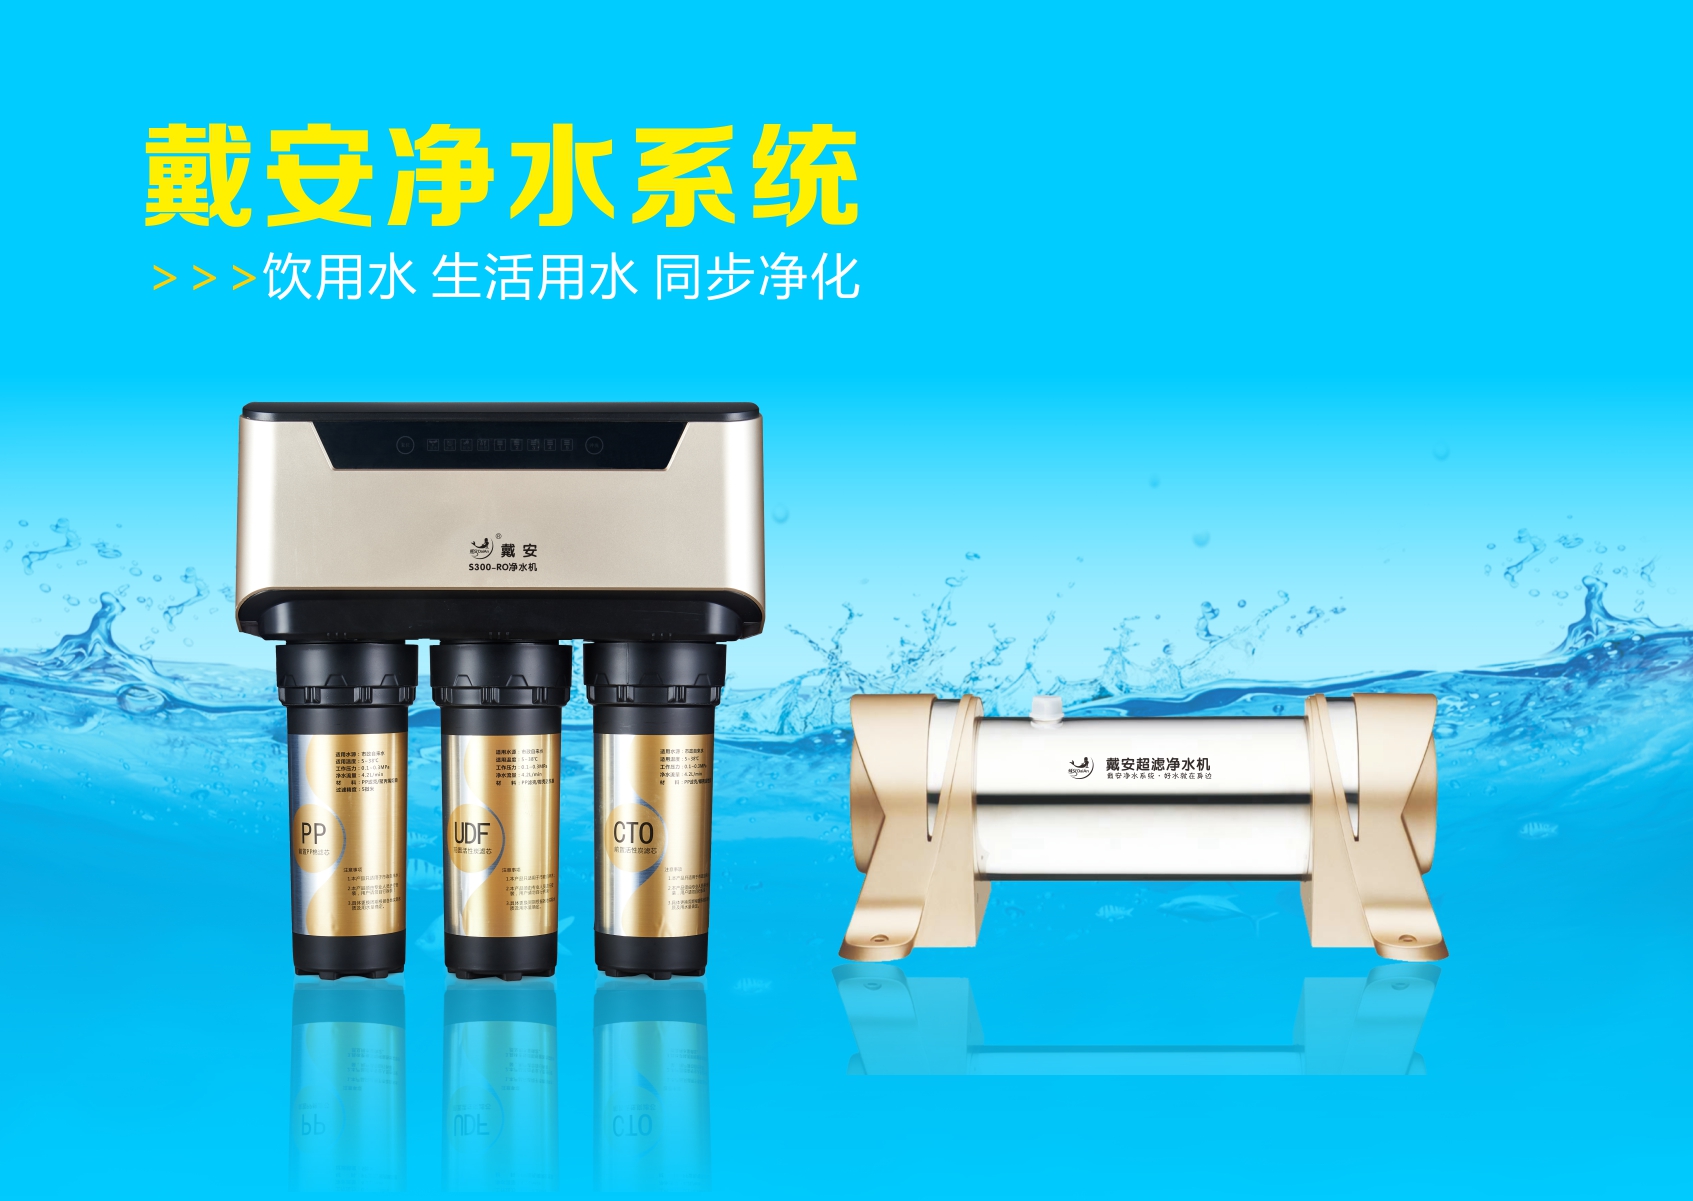 中国新闻网报道丨“戴安净水系统”告诉您为什么要安装净水器？